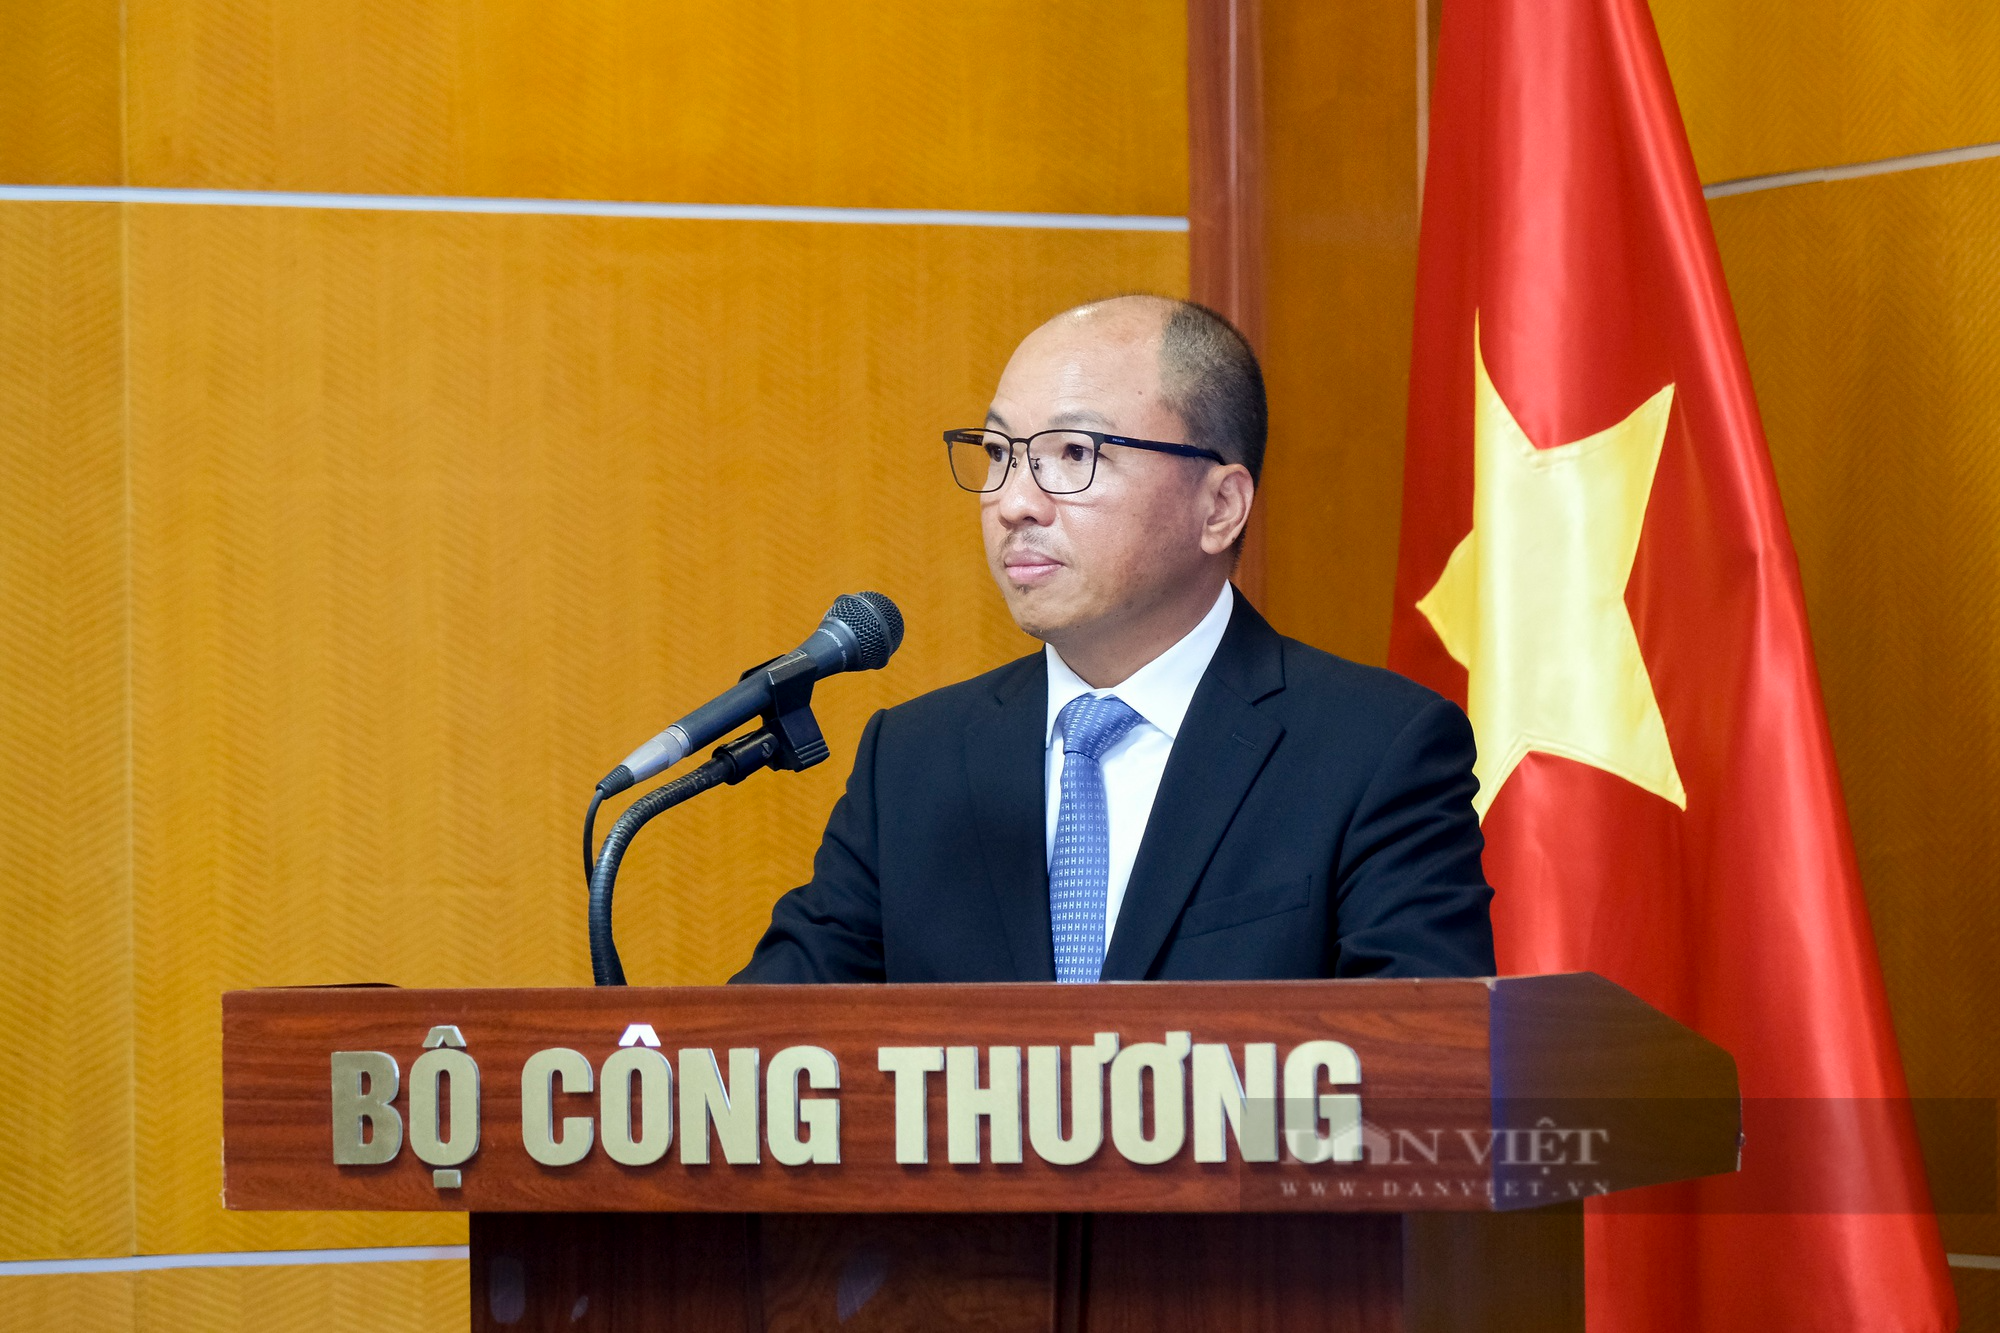 Toyota Việt Nam cùng Bộ Công Thương triển khai hỗ trợ doanh nghiệp trong lĩnh vực công nghiệp hỗ trợ ô tô - Ảnh 4.